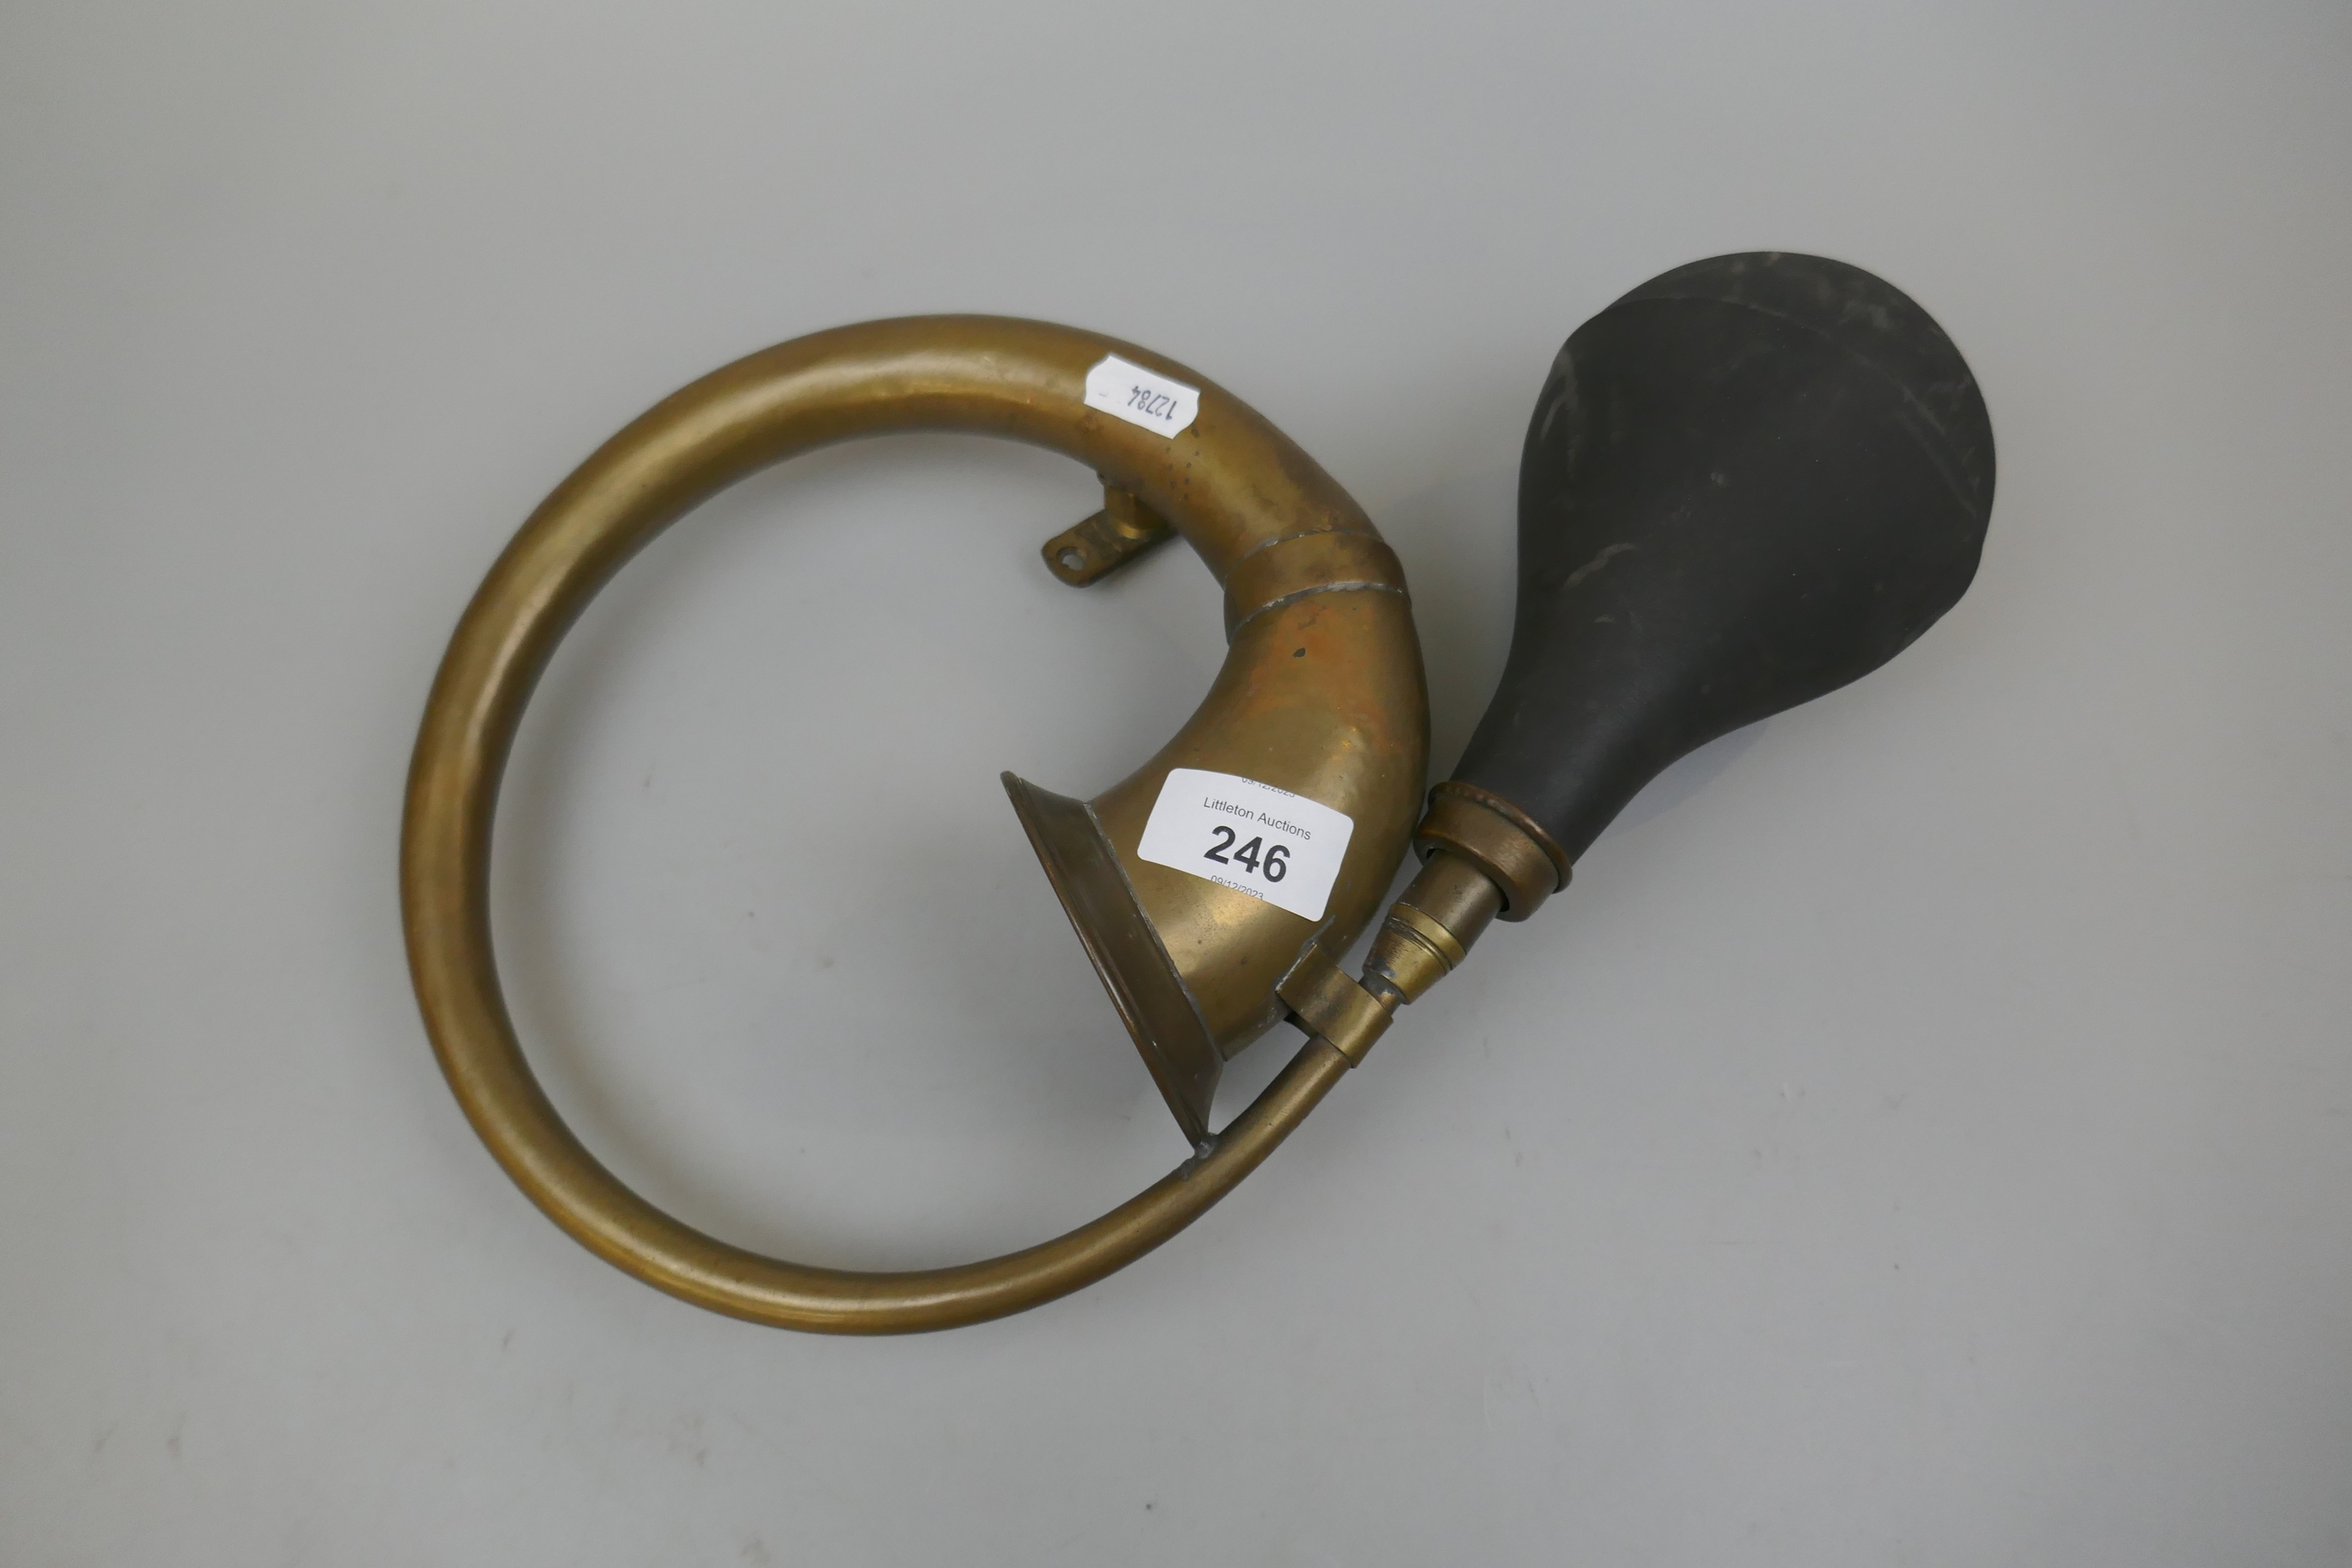 Brass car horn